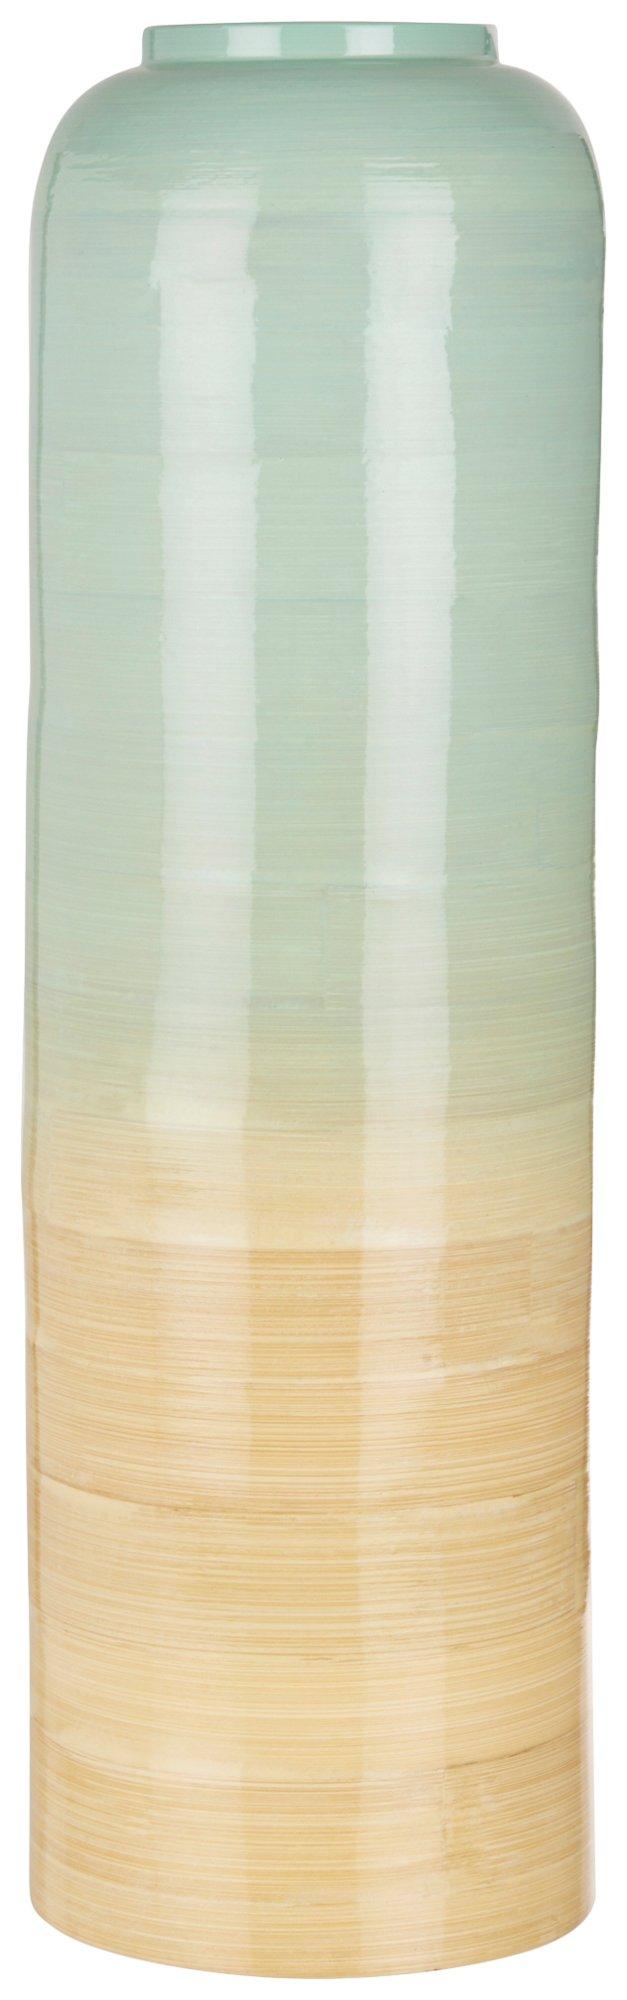 18in Split Color Bamboo Vase